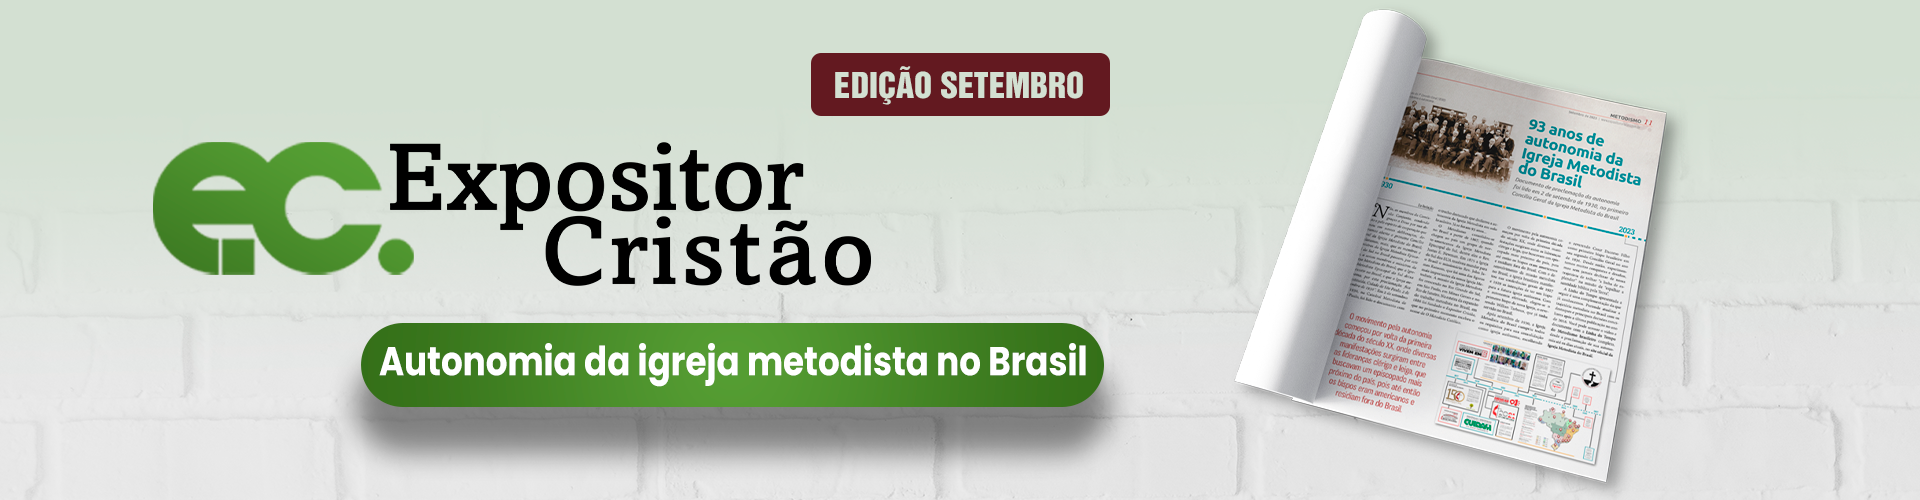 93 anos de Autonomia da Igreja Metodista do Brasil